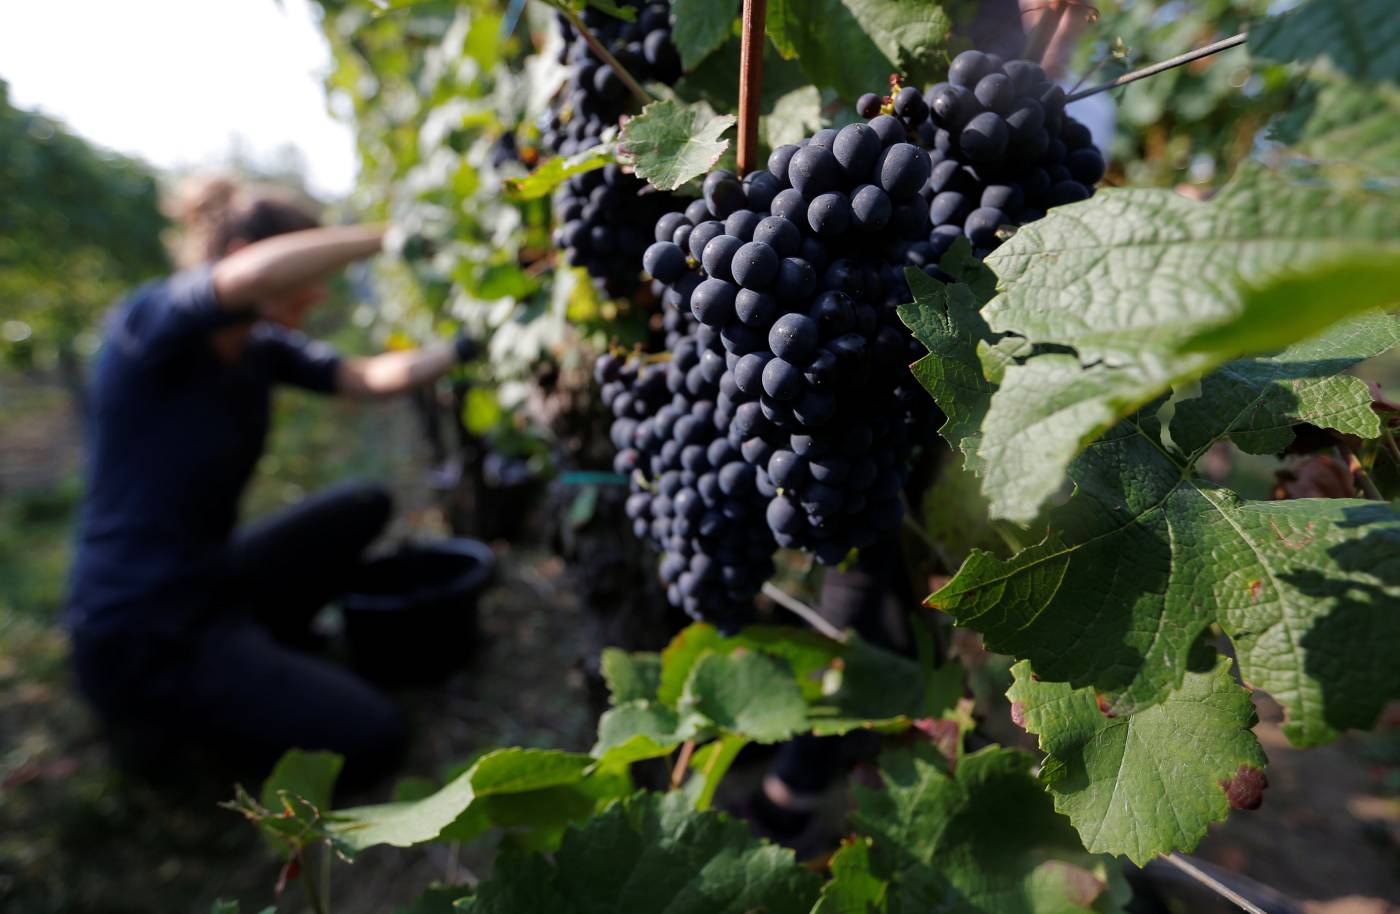 Heat-stricken French wine harvests sound climate alarm